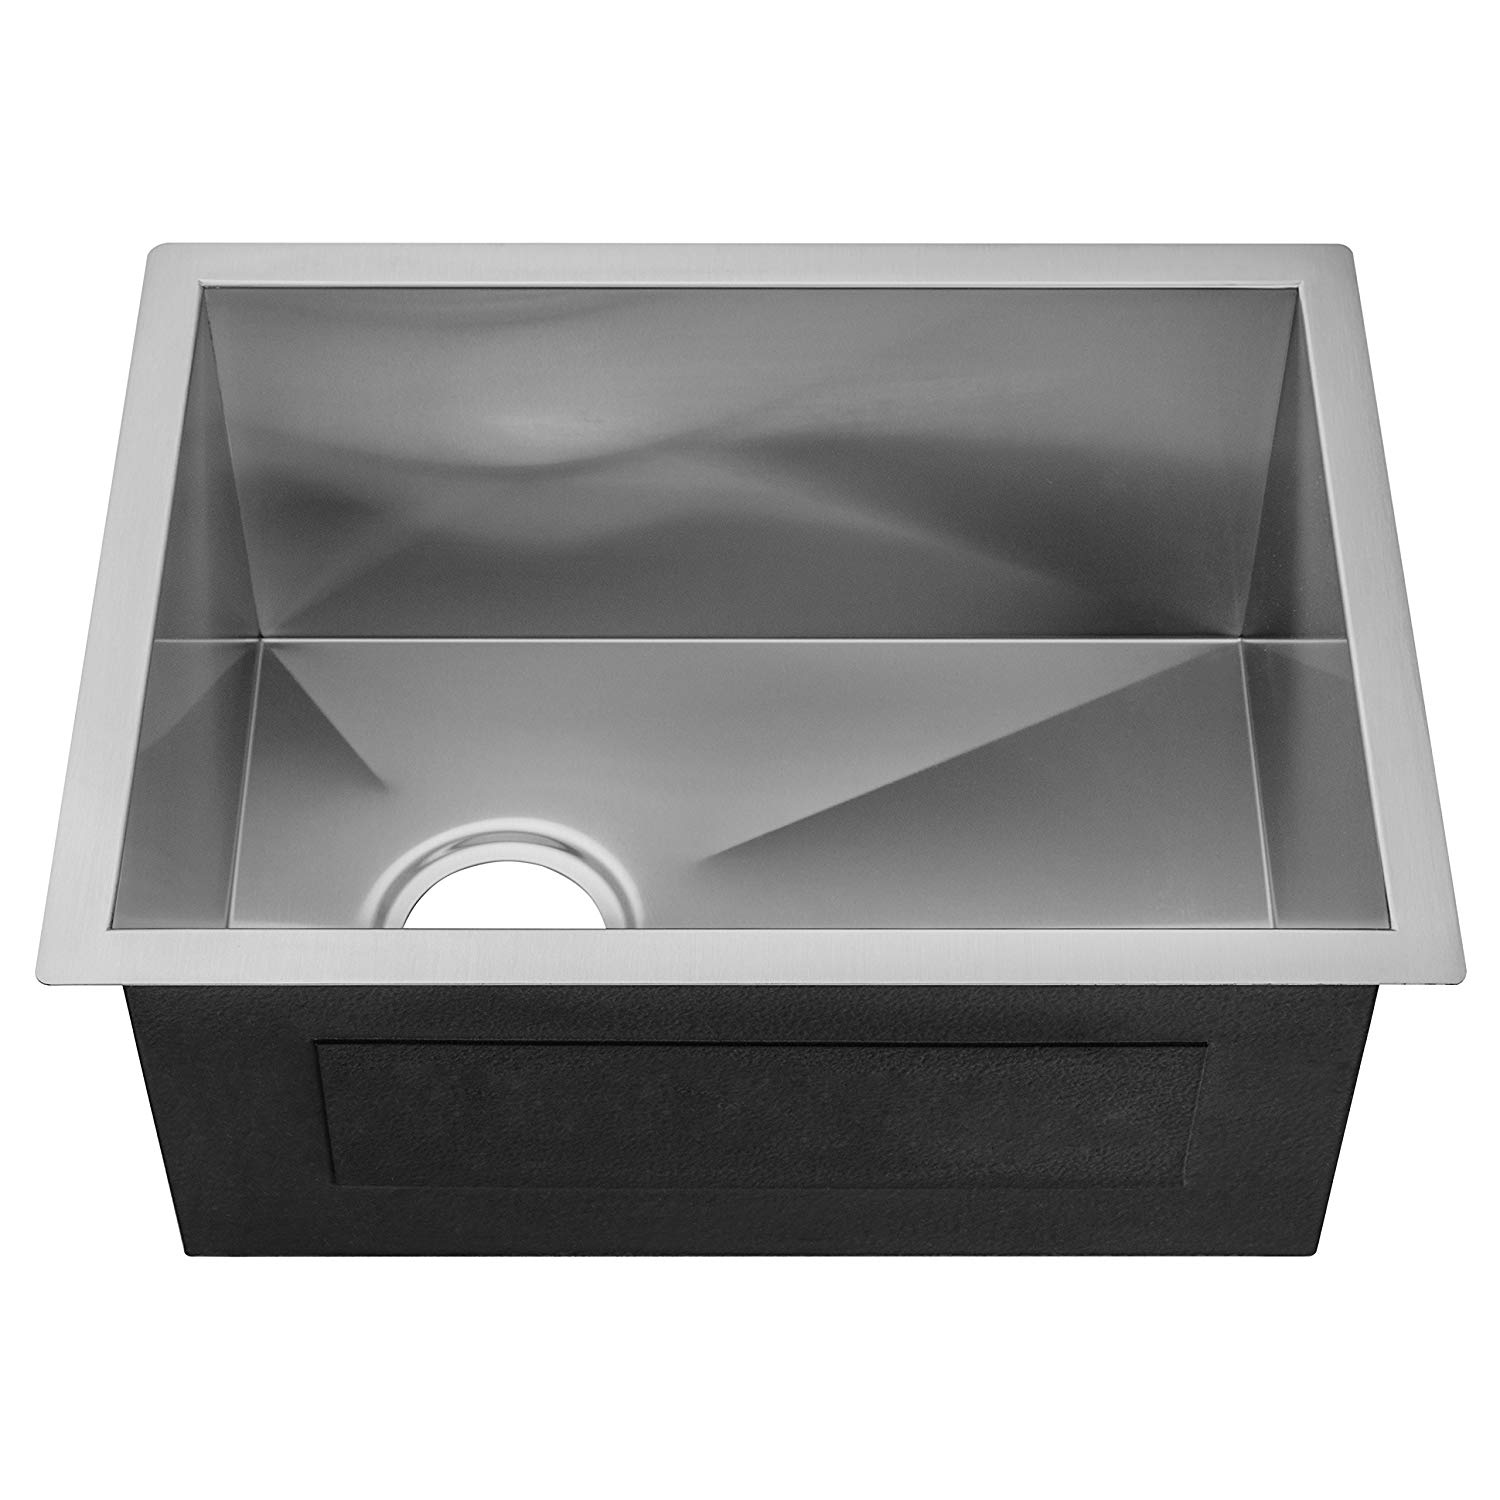 PVD Nano Stainless Steel Handmade Undermount Kitchen Sink